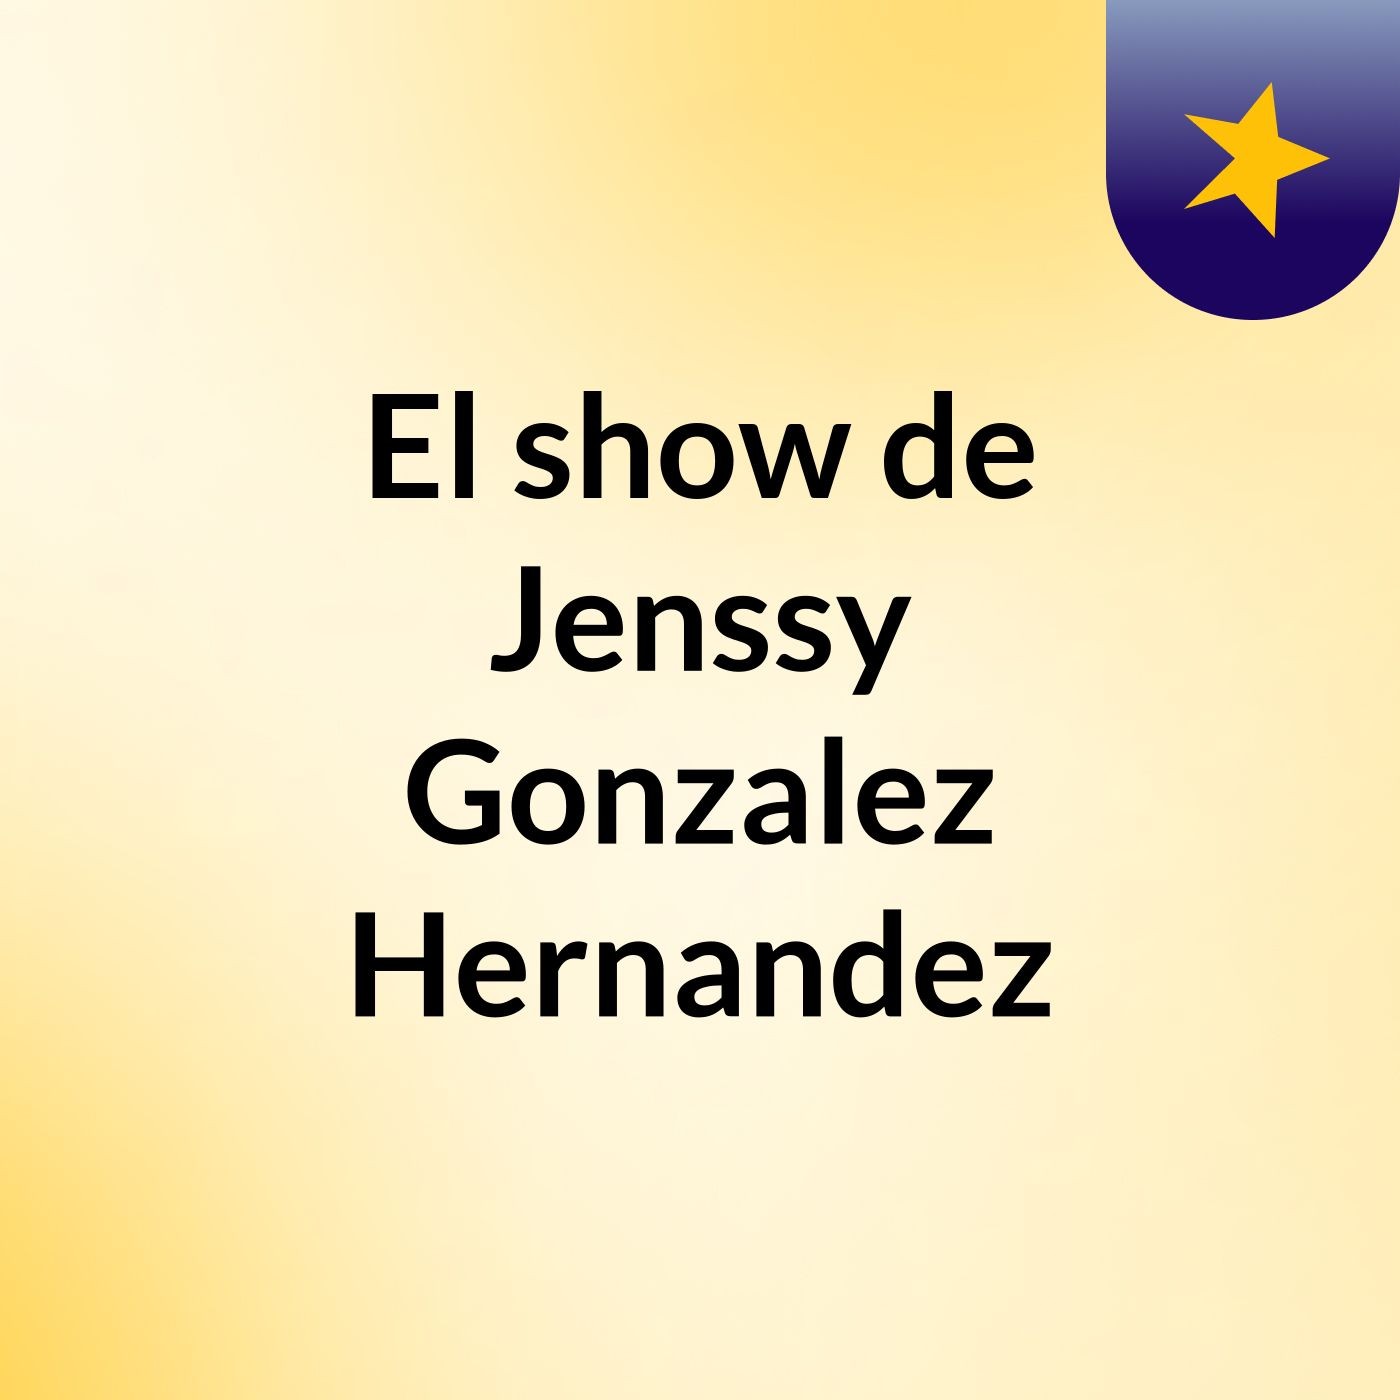 El show de Jenssy Gonzalez Hernandez